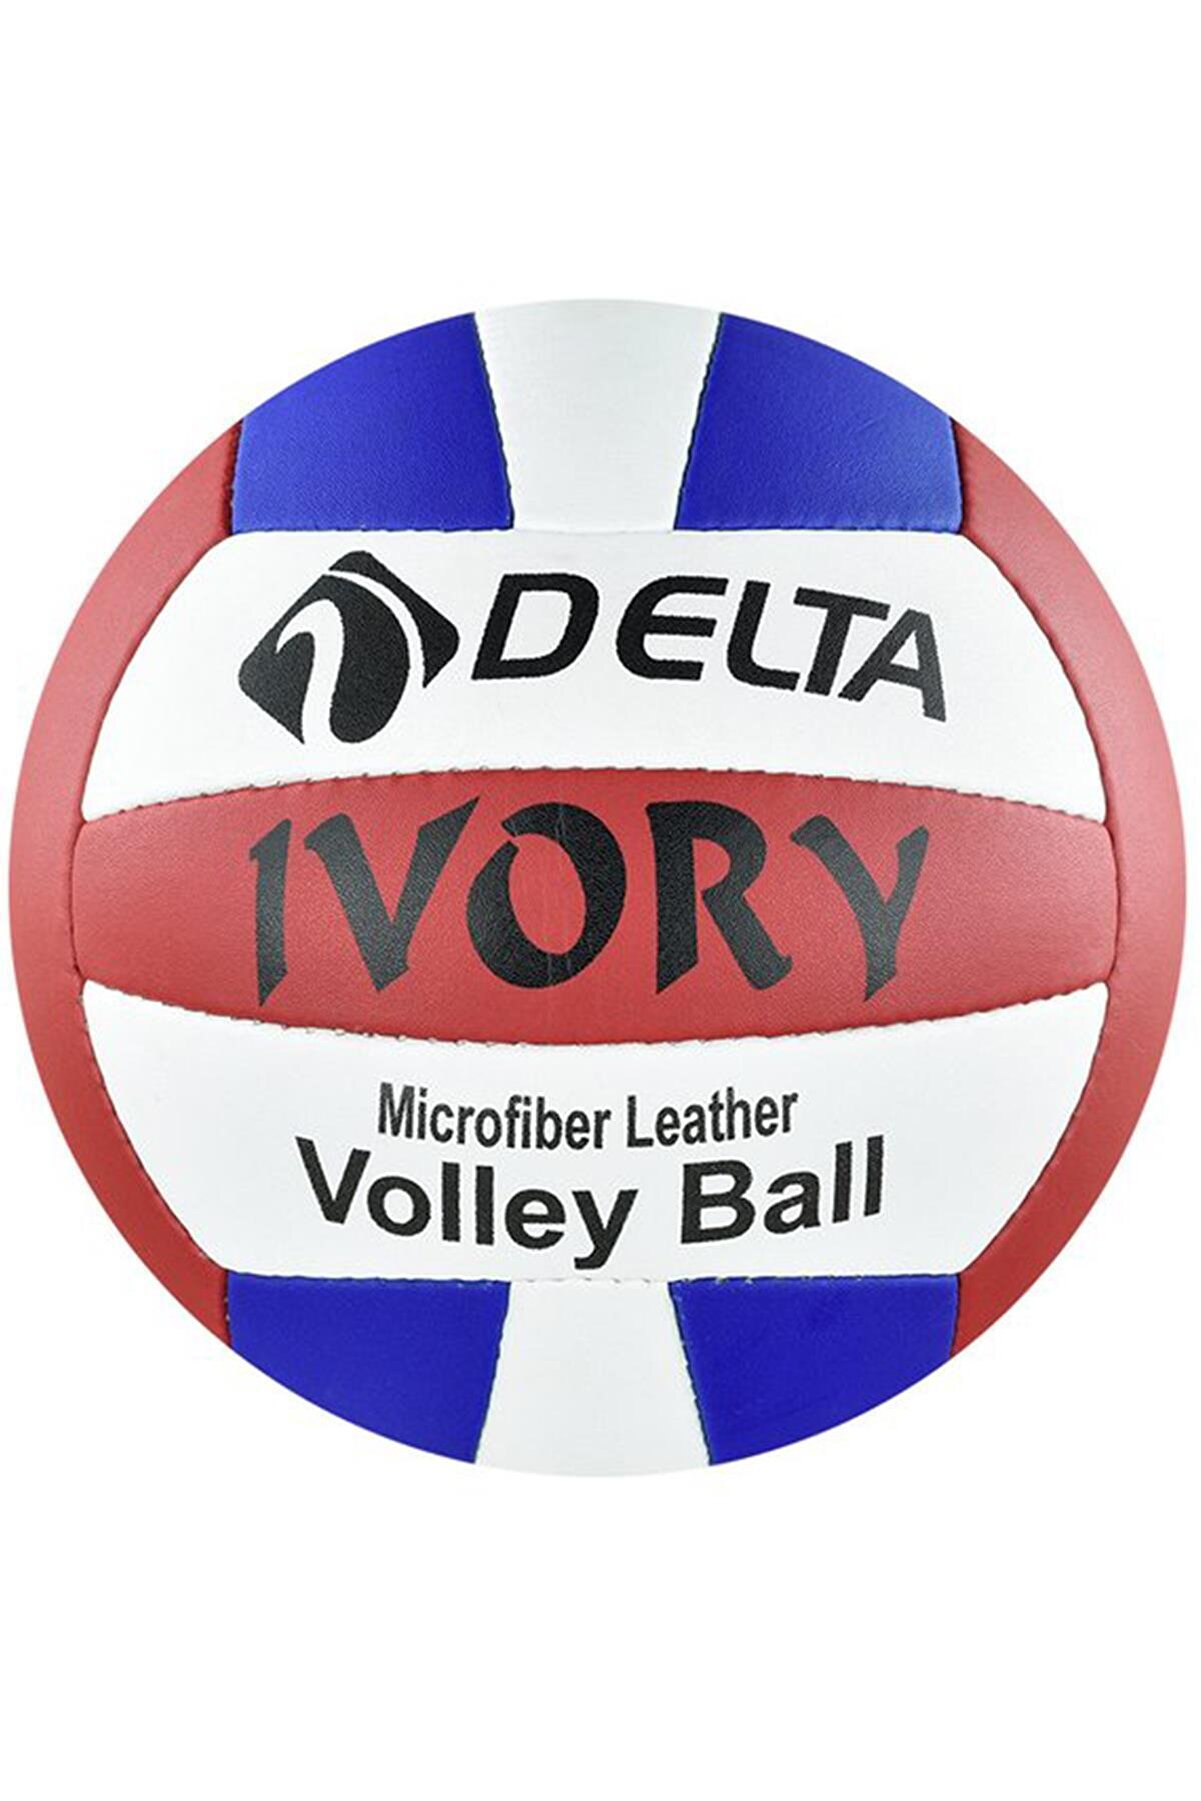 Delta Ivory El Dikişli 5 Numara Voleybol Topu